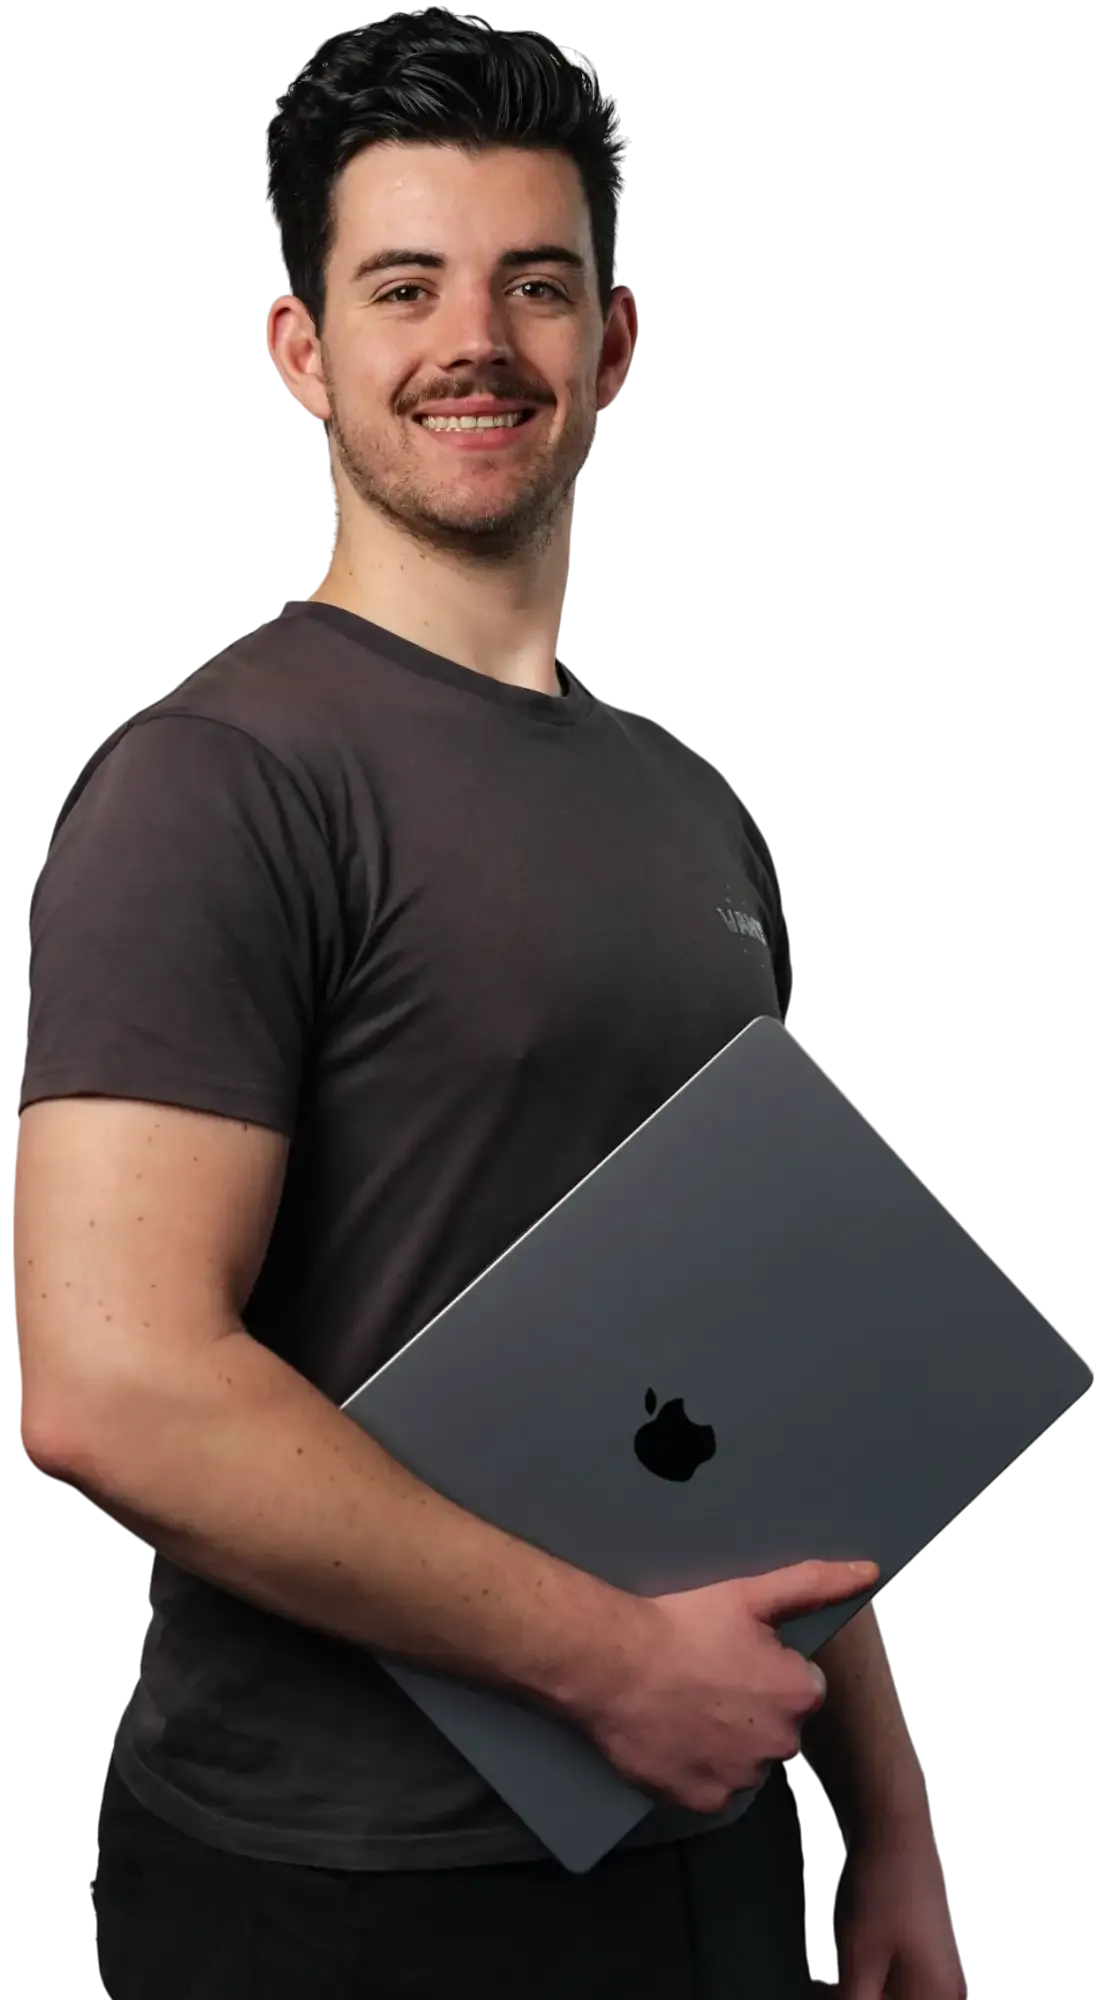 Johr Claessens houd zijn macbook vast onder zijn arm